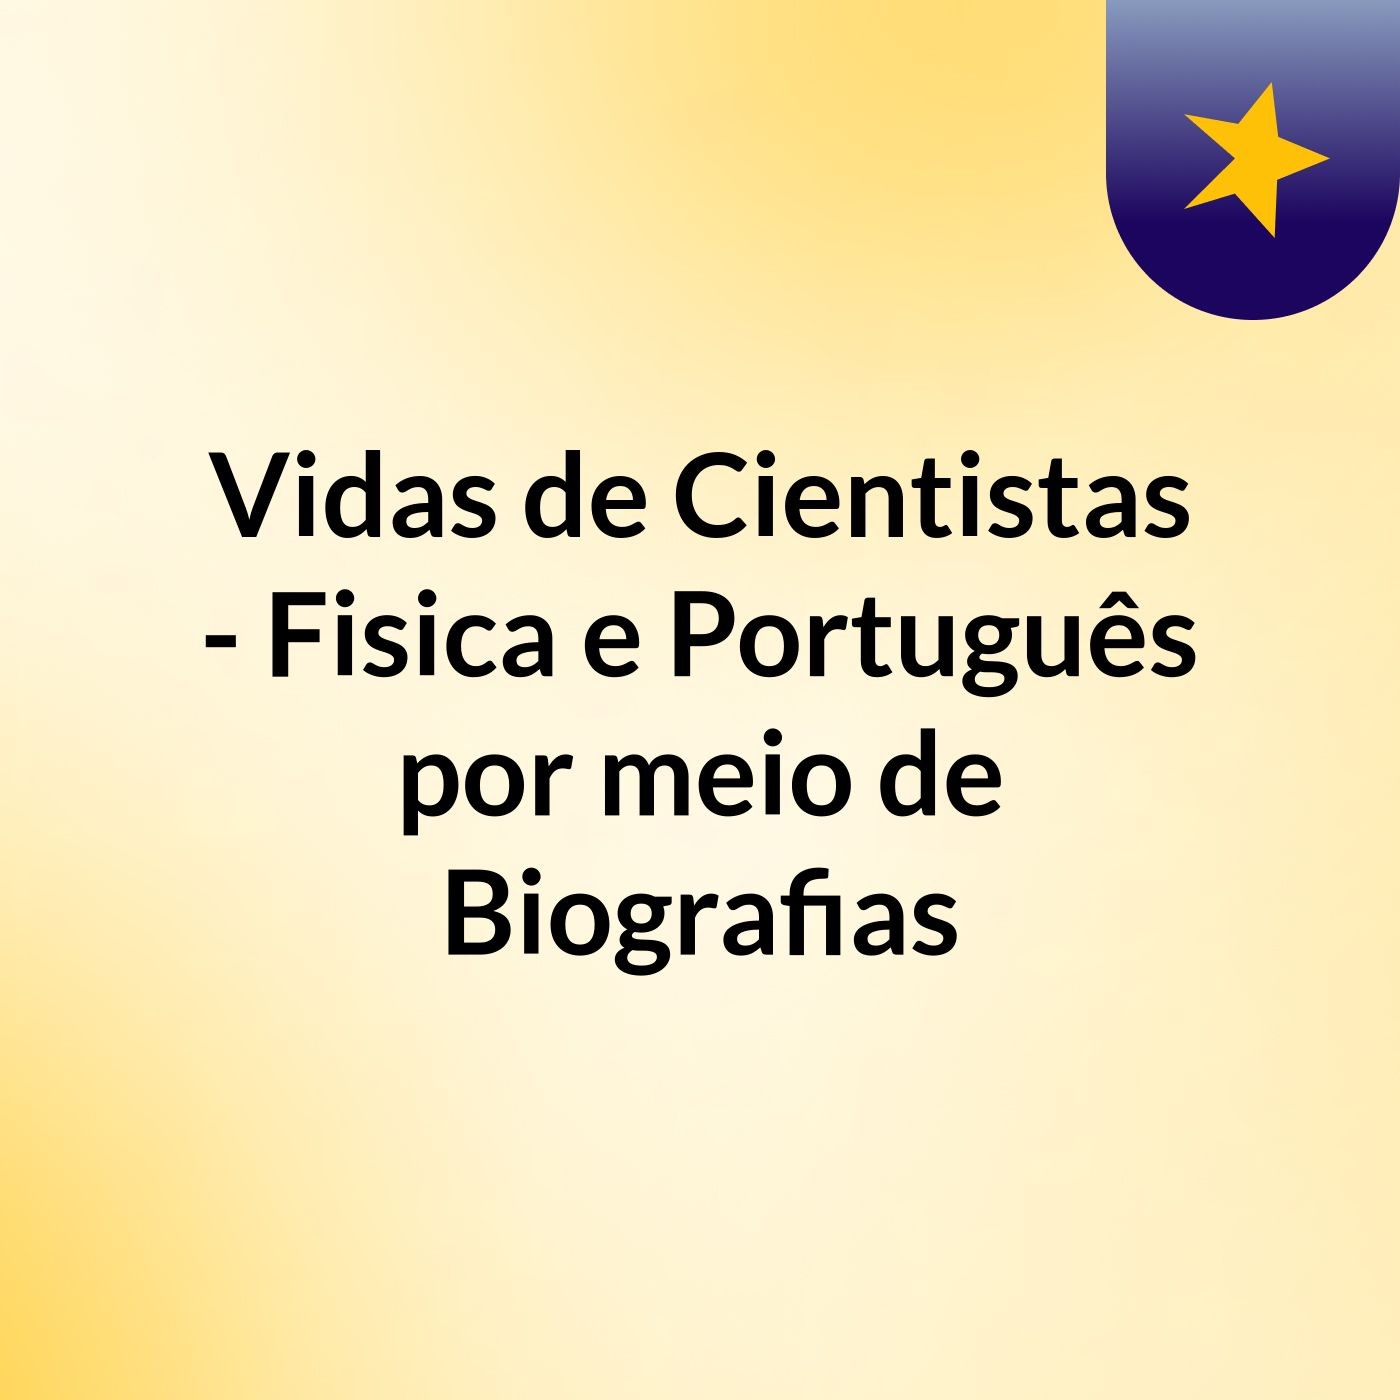 Vidas de Cientistas - Fisica e Português por meio de Biografias